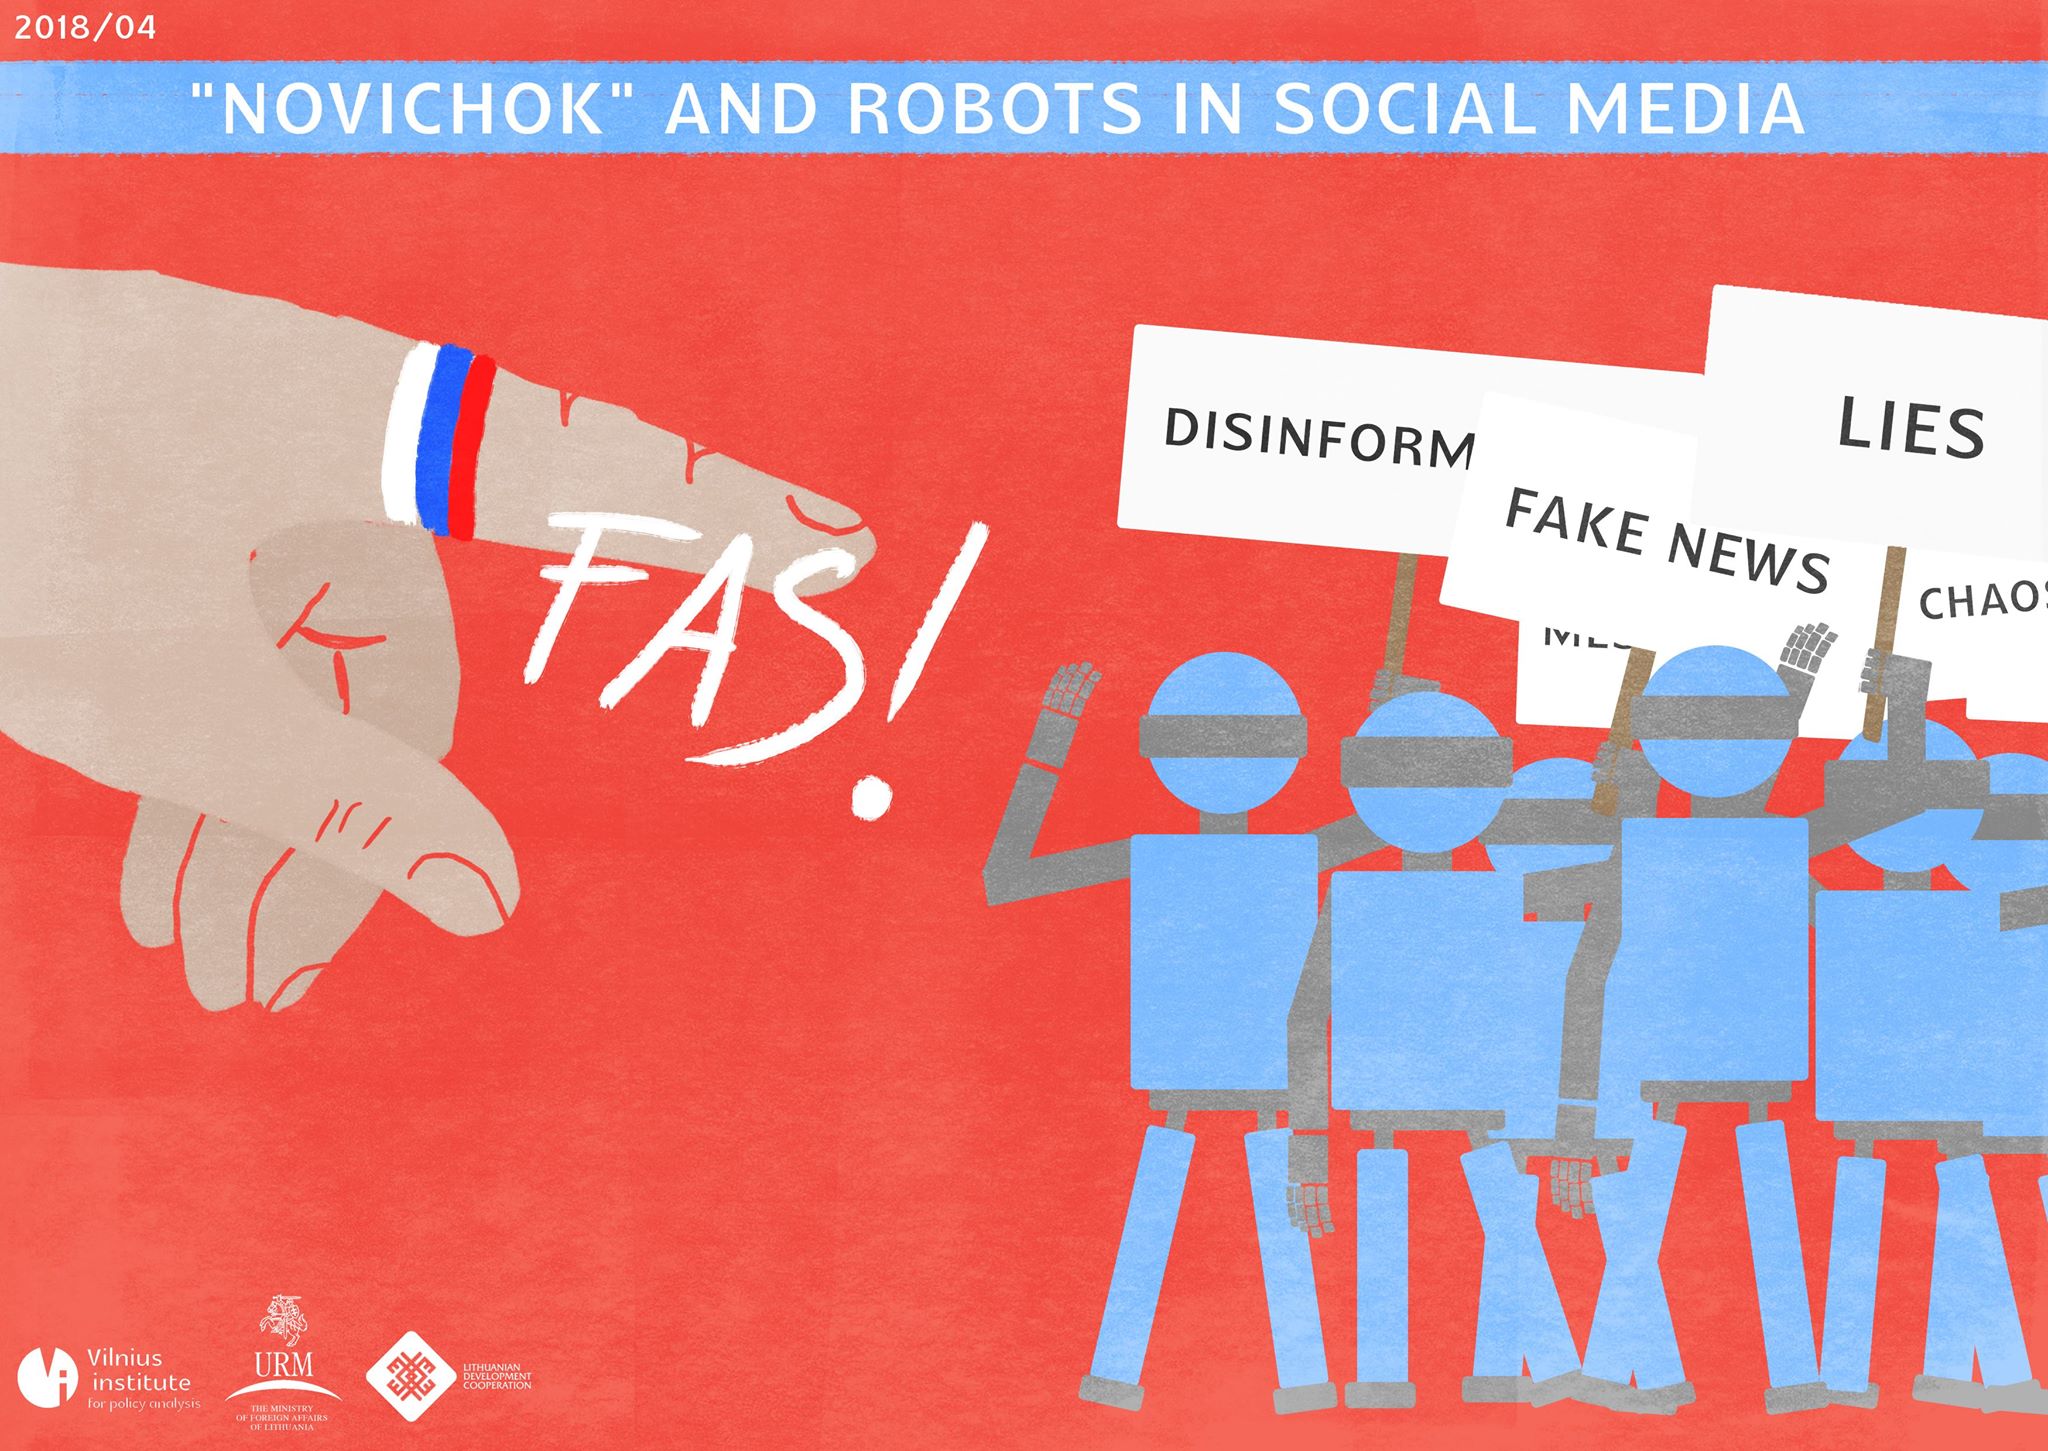 “Novichok” and robots in social media